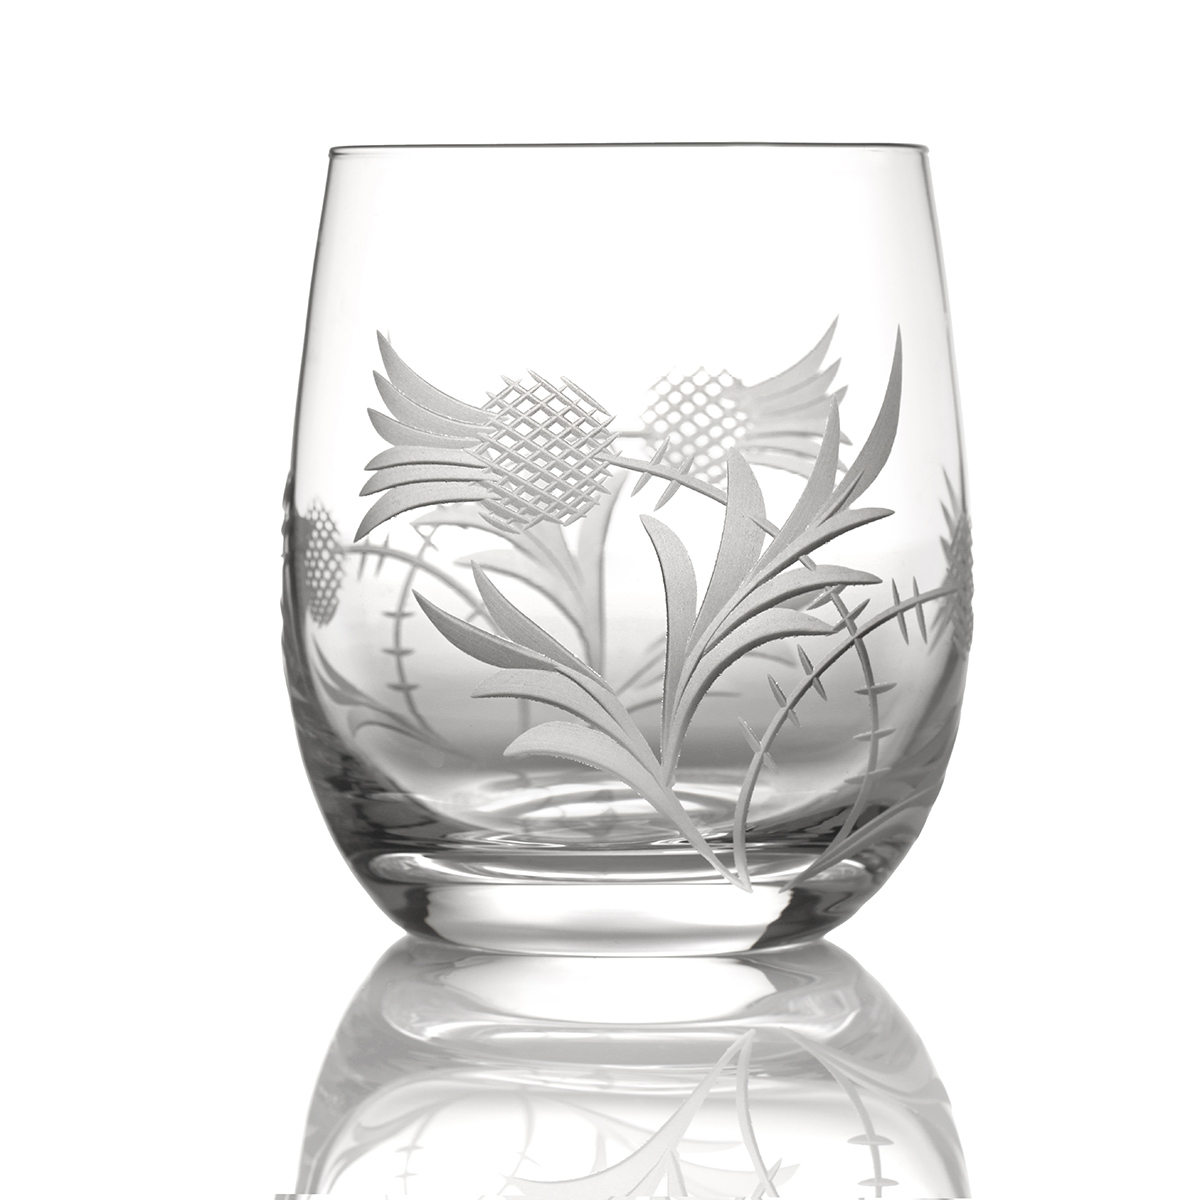 Flower of Scotland Barrel Tumbler - Kristall Whiskyglas mit Distelschliff aus Schottland